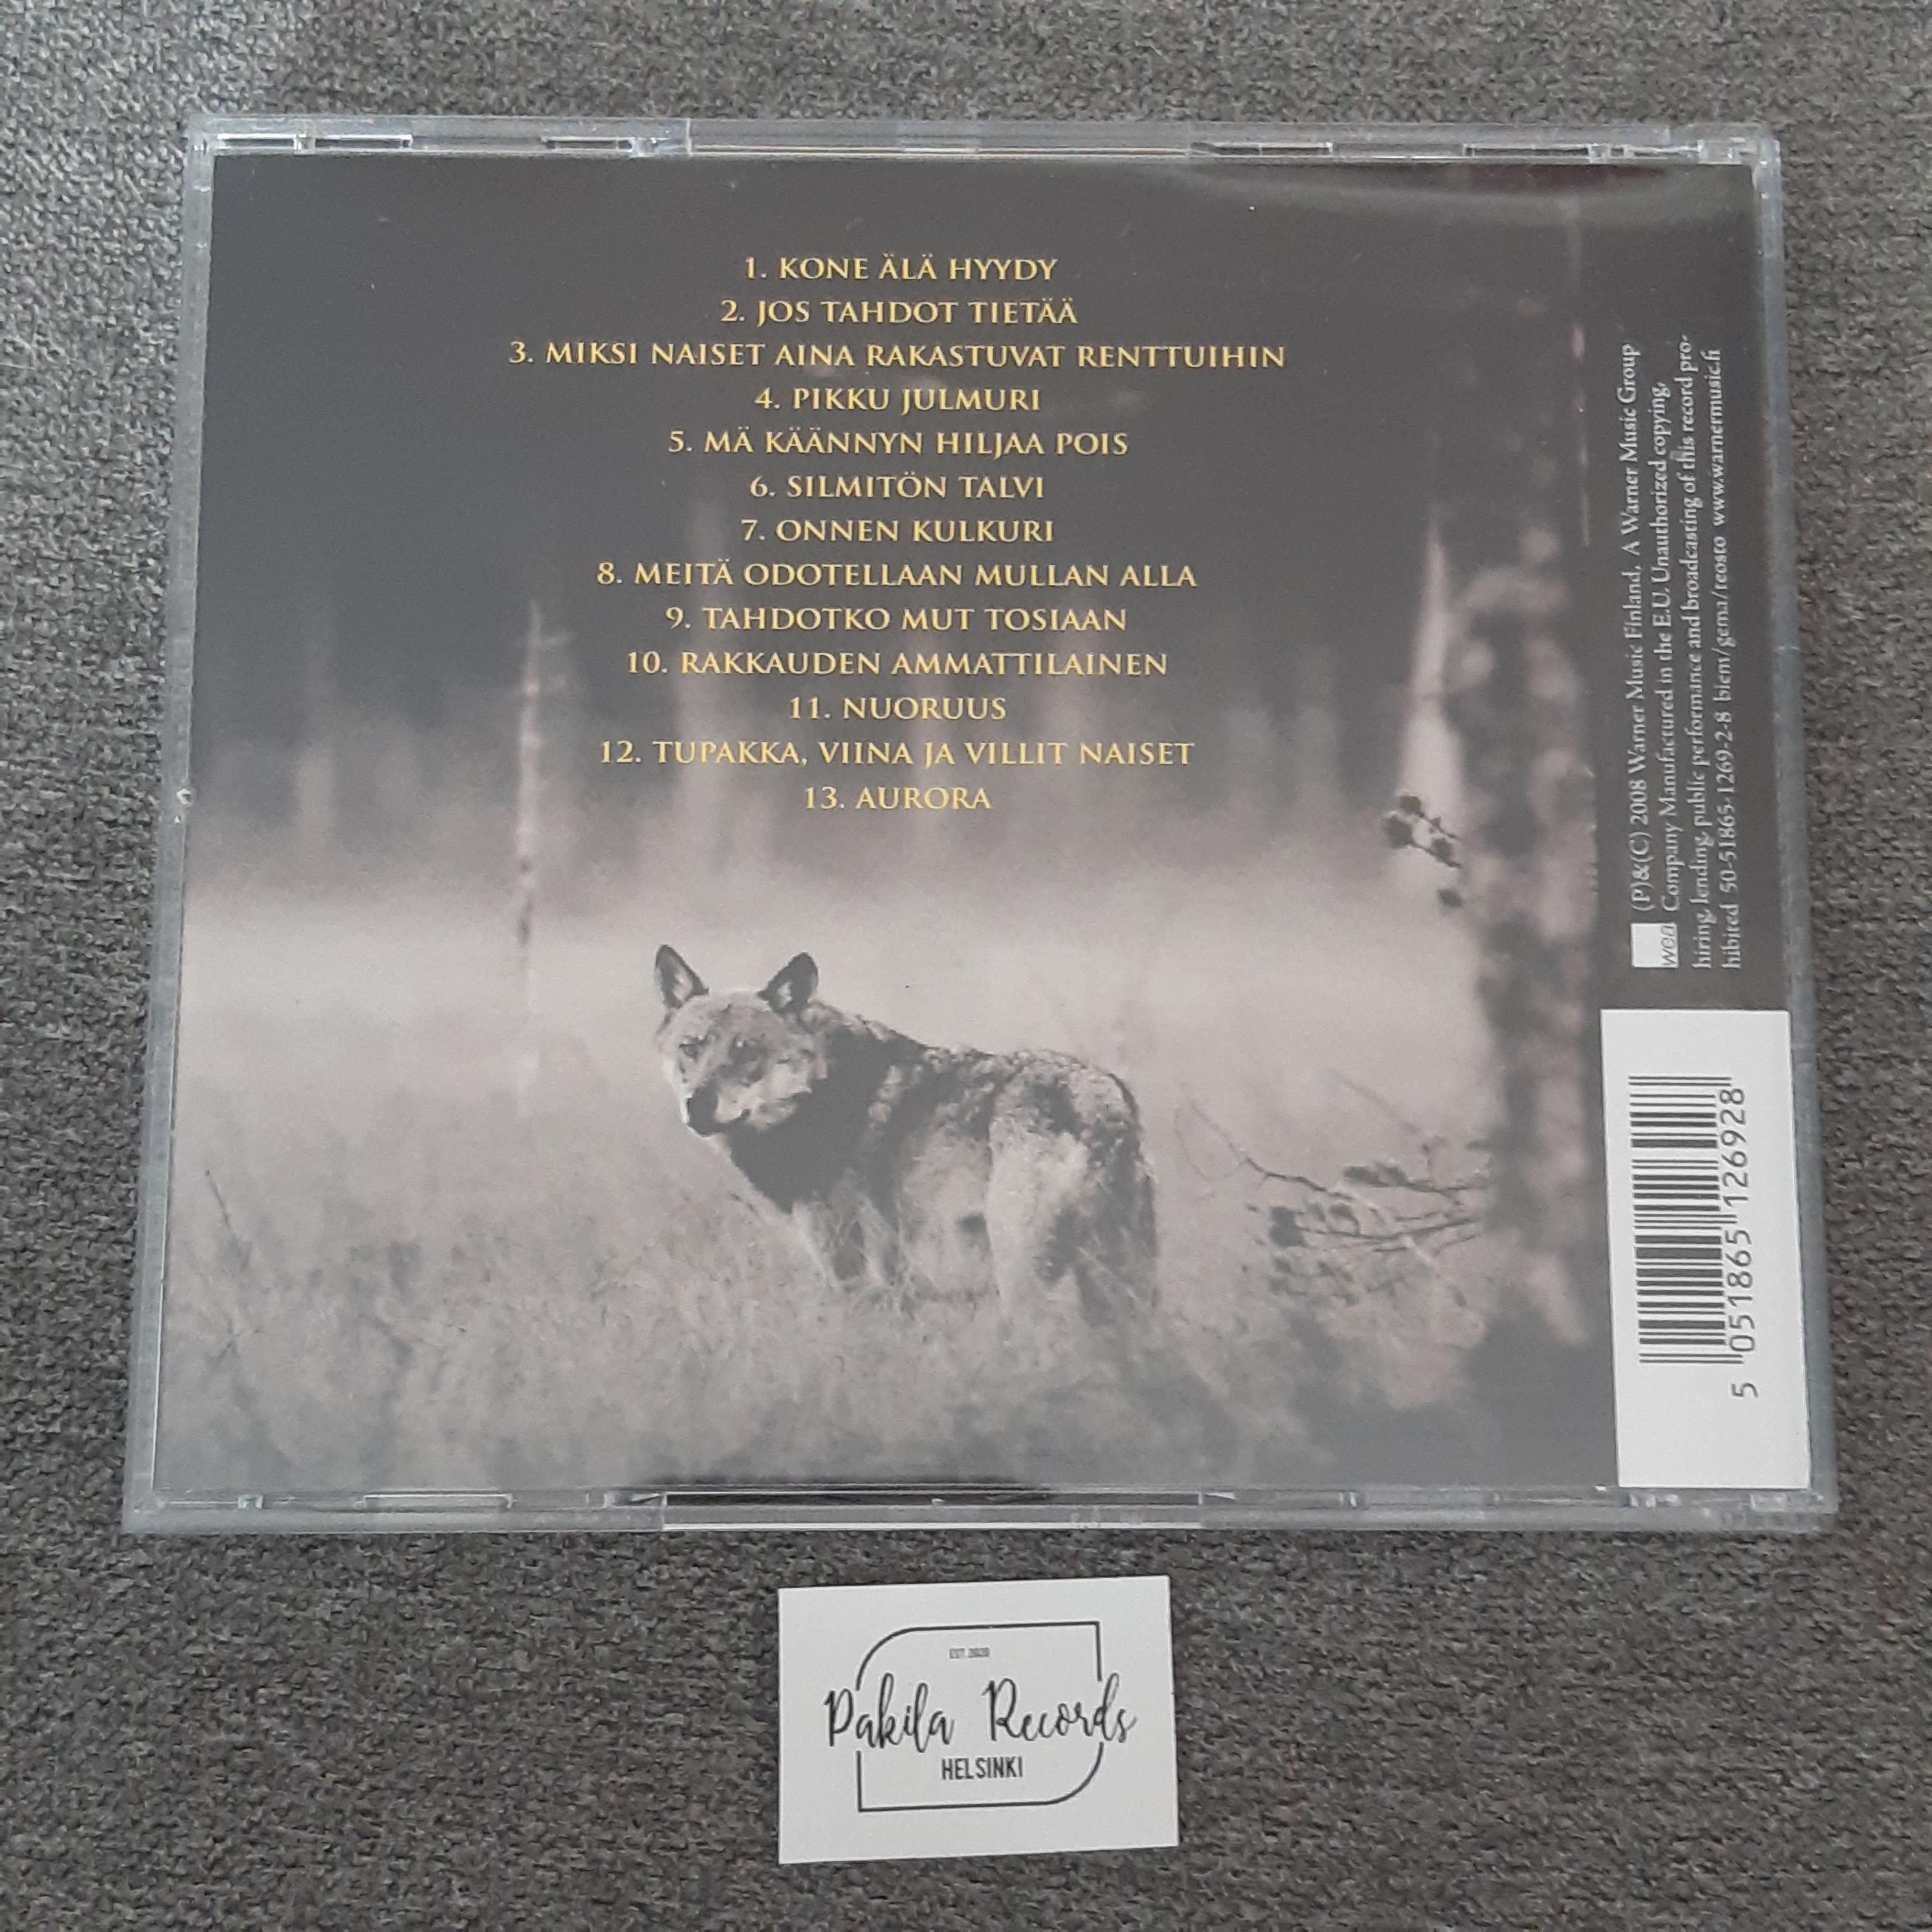 Vesa-Matti Loiri - Kasari - CD (käytetty)